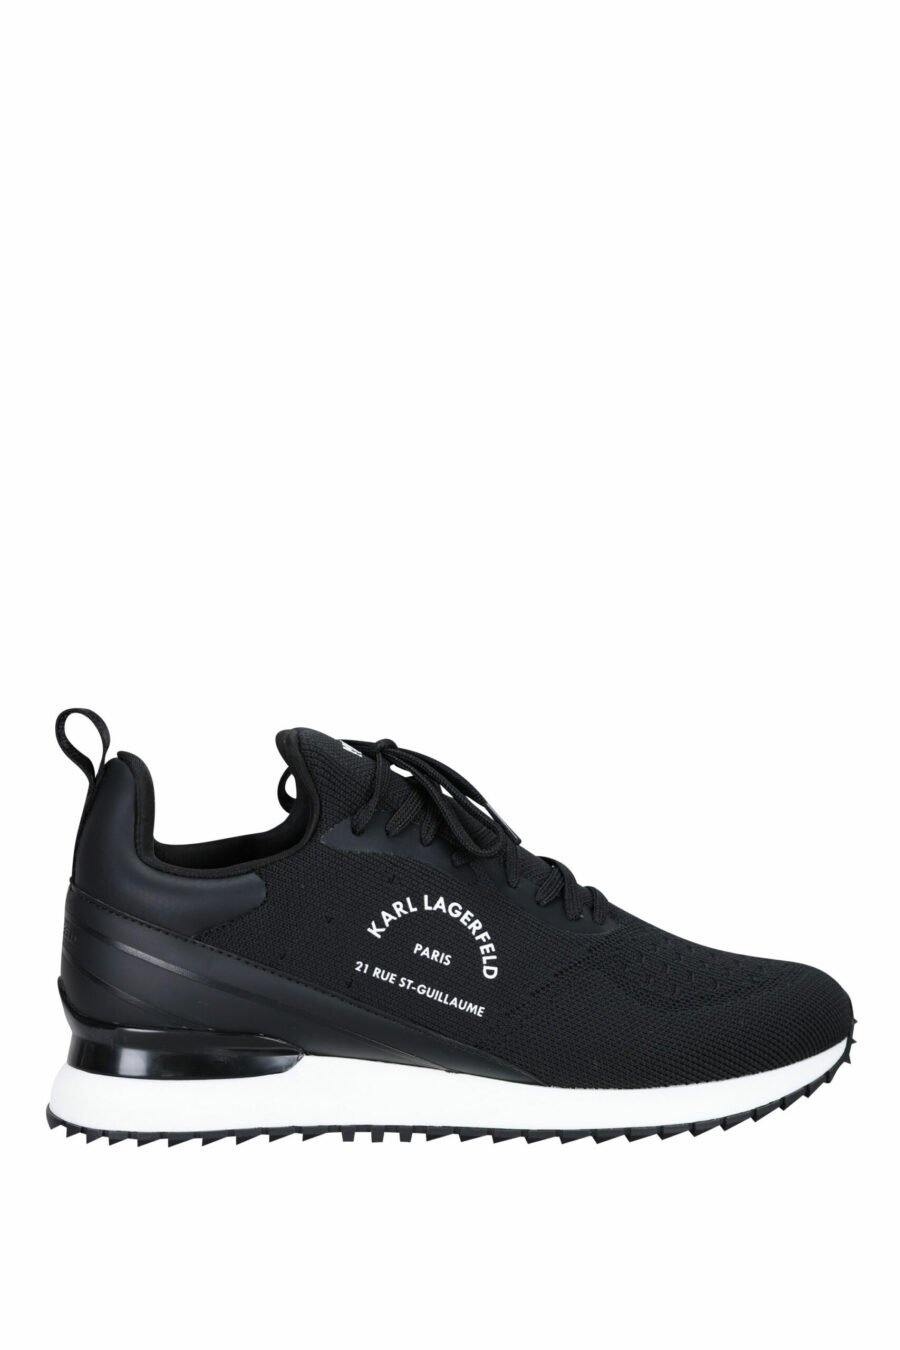 Sapatos "velocitor" pretos com logótipo "rue st guillaume" branco - 5059529326370